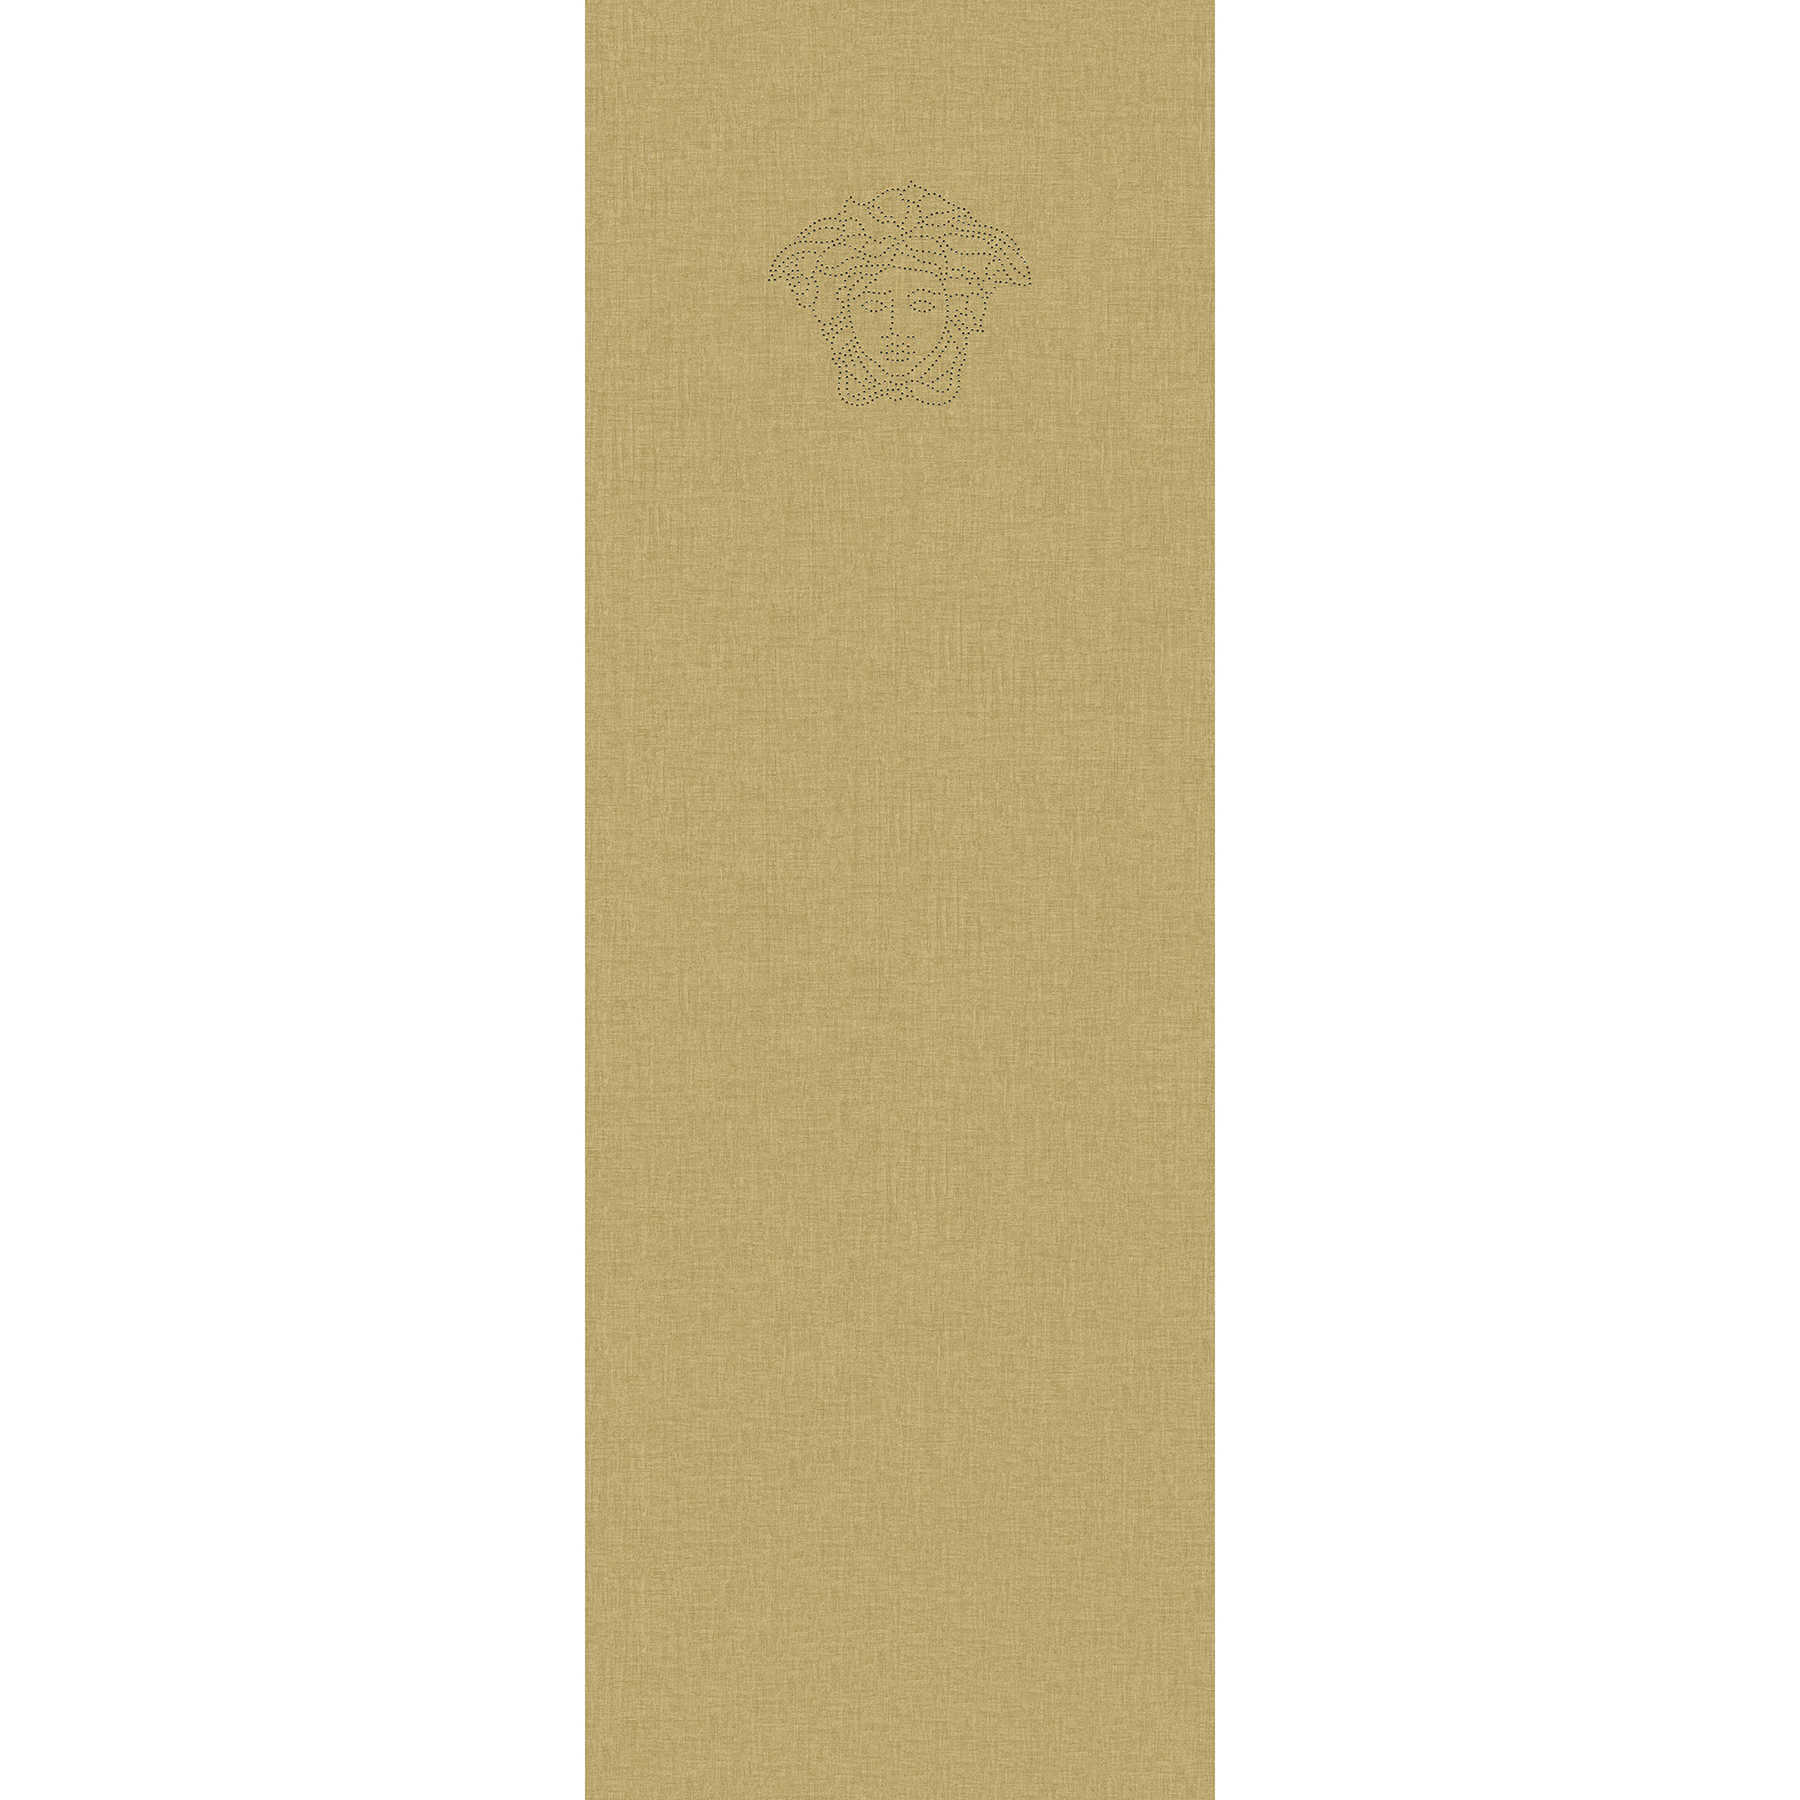 Carta da parati non tessuta liscio giallo-oro con logo perlato - metallizzato
